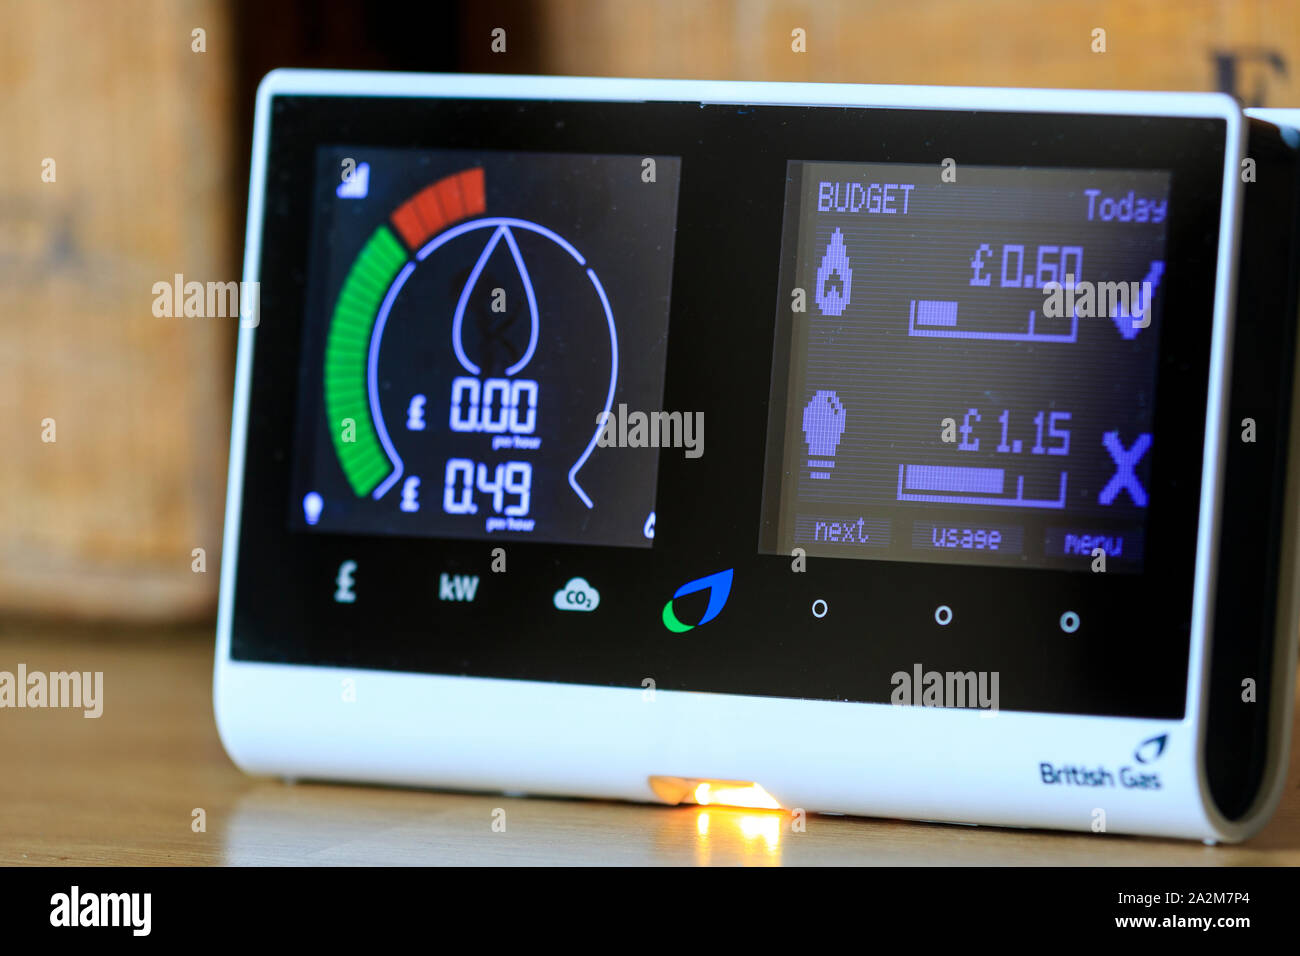 Famiglia British Gas smart meter sul piano di lavoro per il monitoraggio elettrico e il consumo di gas con conseguente risparmio di denaro per i residenti. Mostra ad alto consumo energetico. Foto Stock